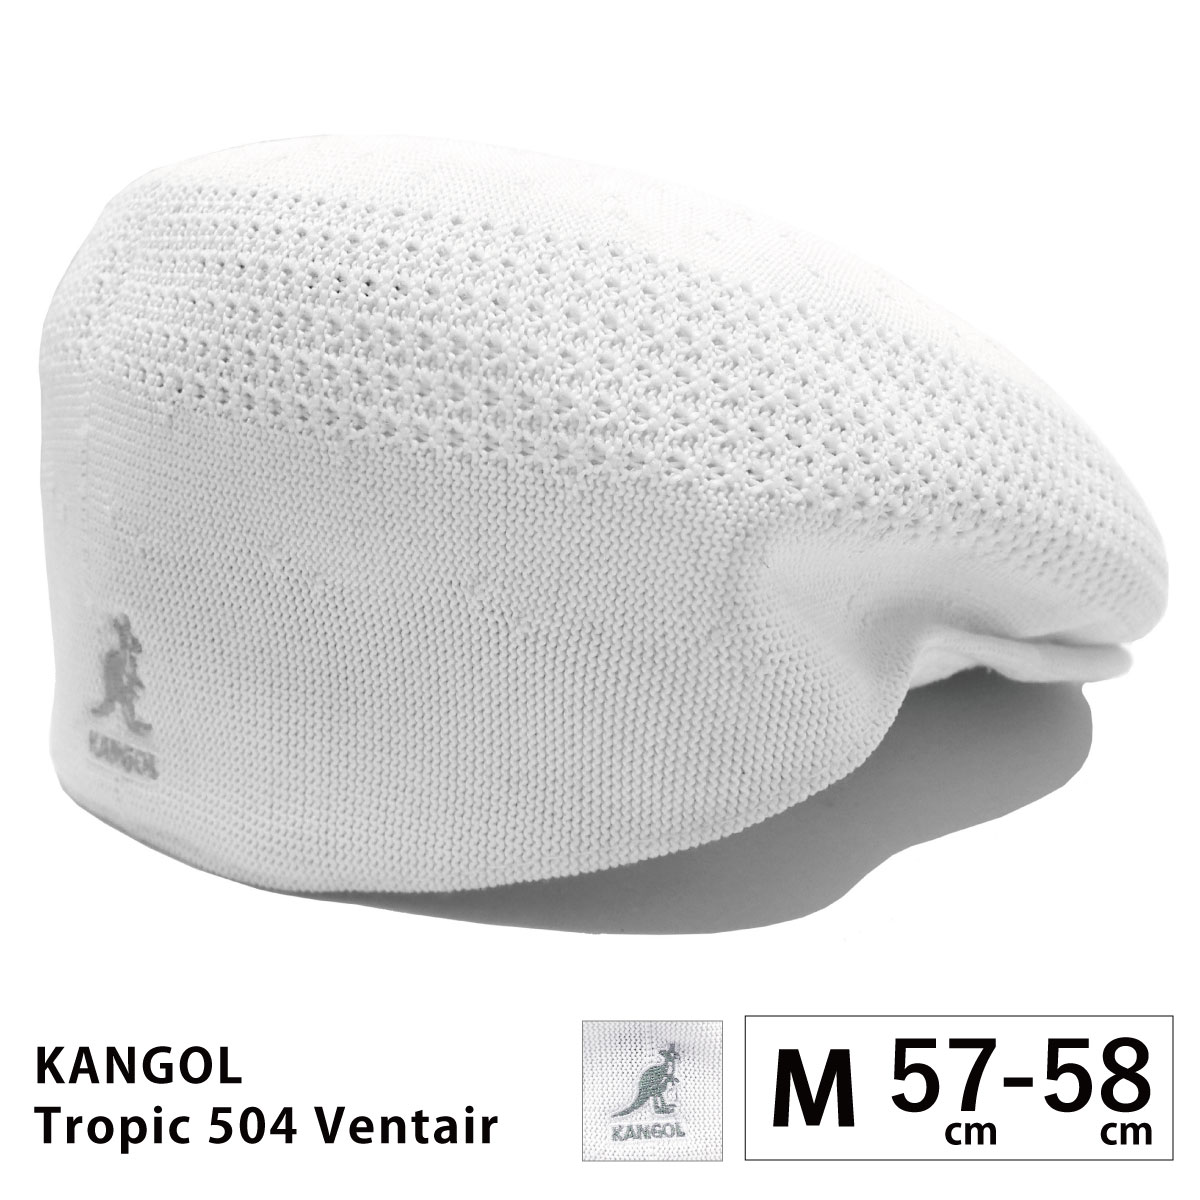 KANGOL ハンチング帽 メンズ 父の日 帽子 大きい TROPIC 504 VENTAIR 57cm-64cm メッシュ 涼しい  kan-195-169001 カンゴール 正規取扱